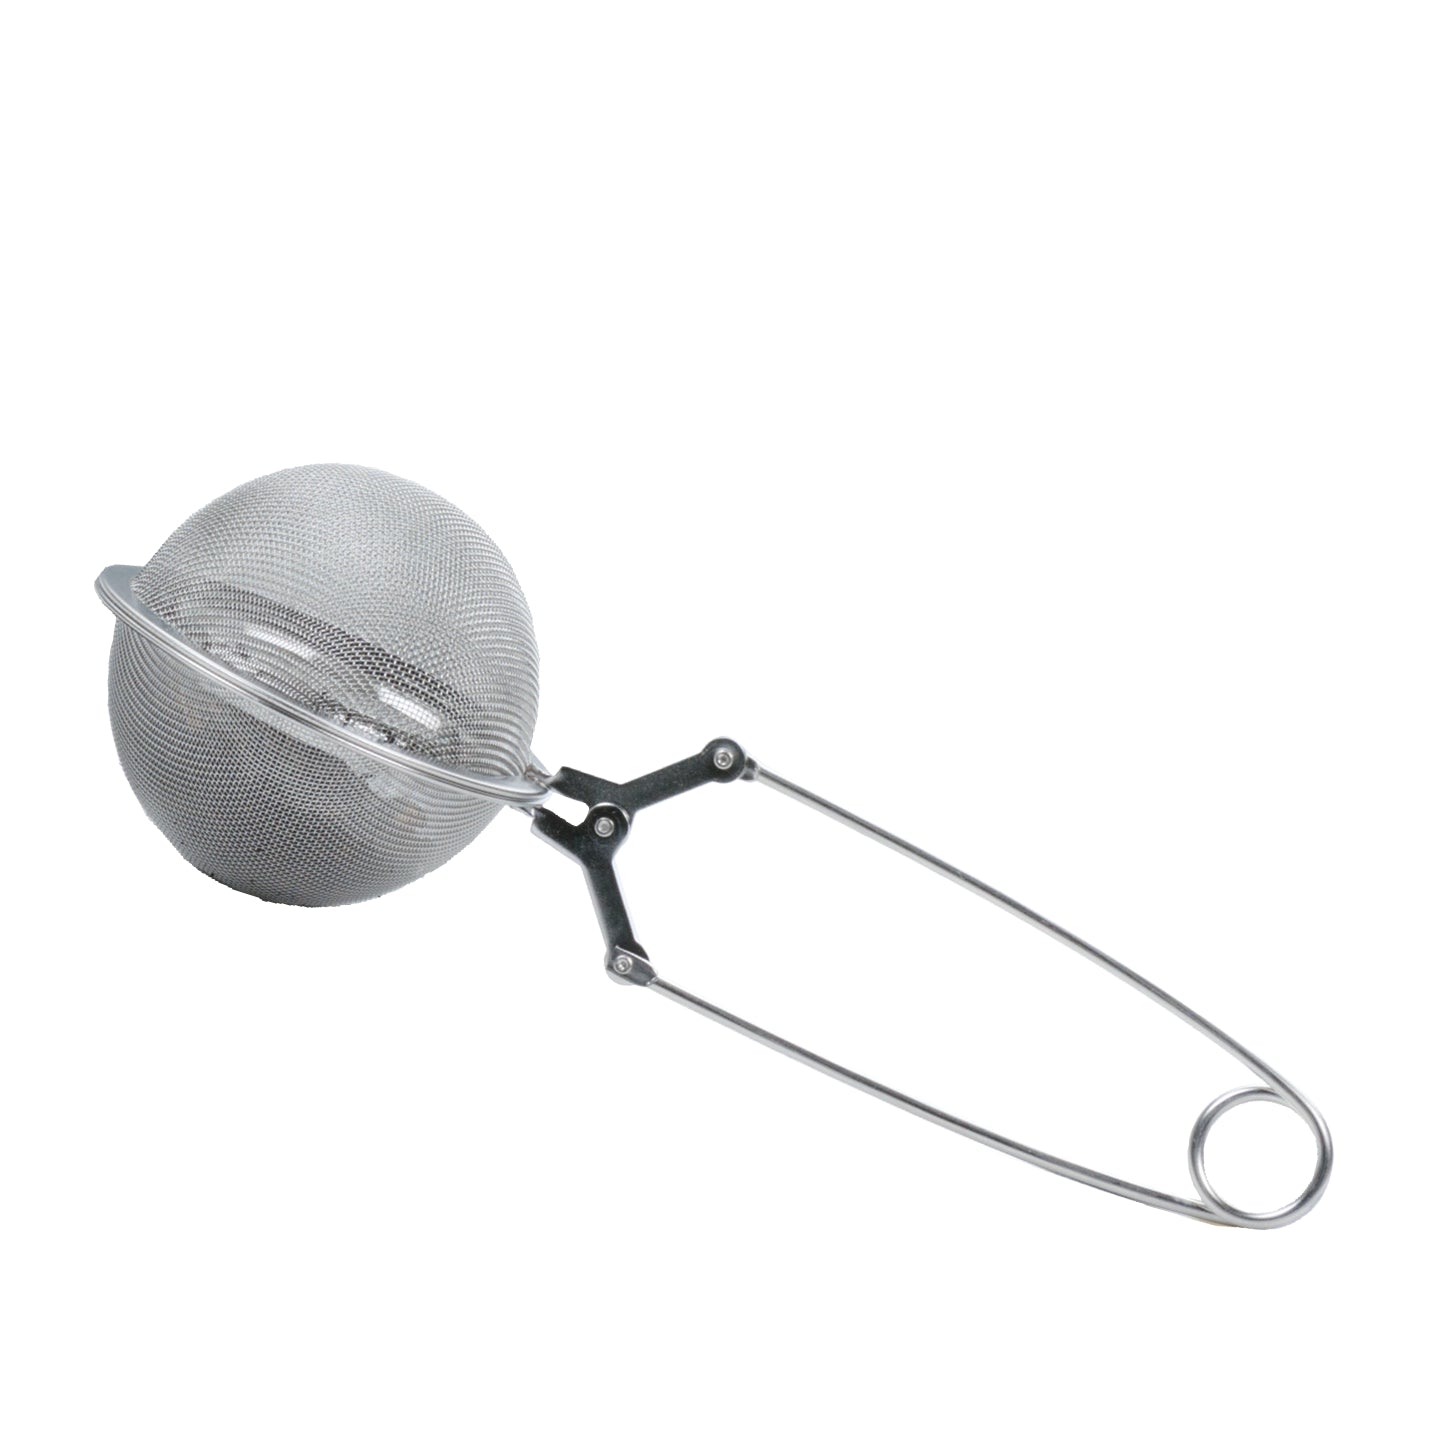 Stainless Steel Mesh Tea Infuser Spoon – Small 1.75" Diameter